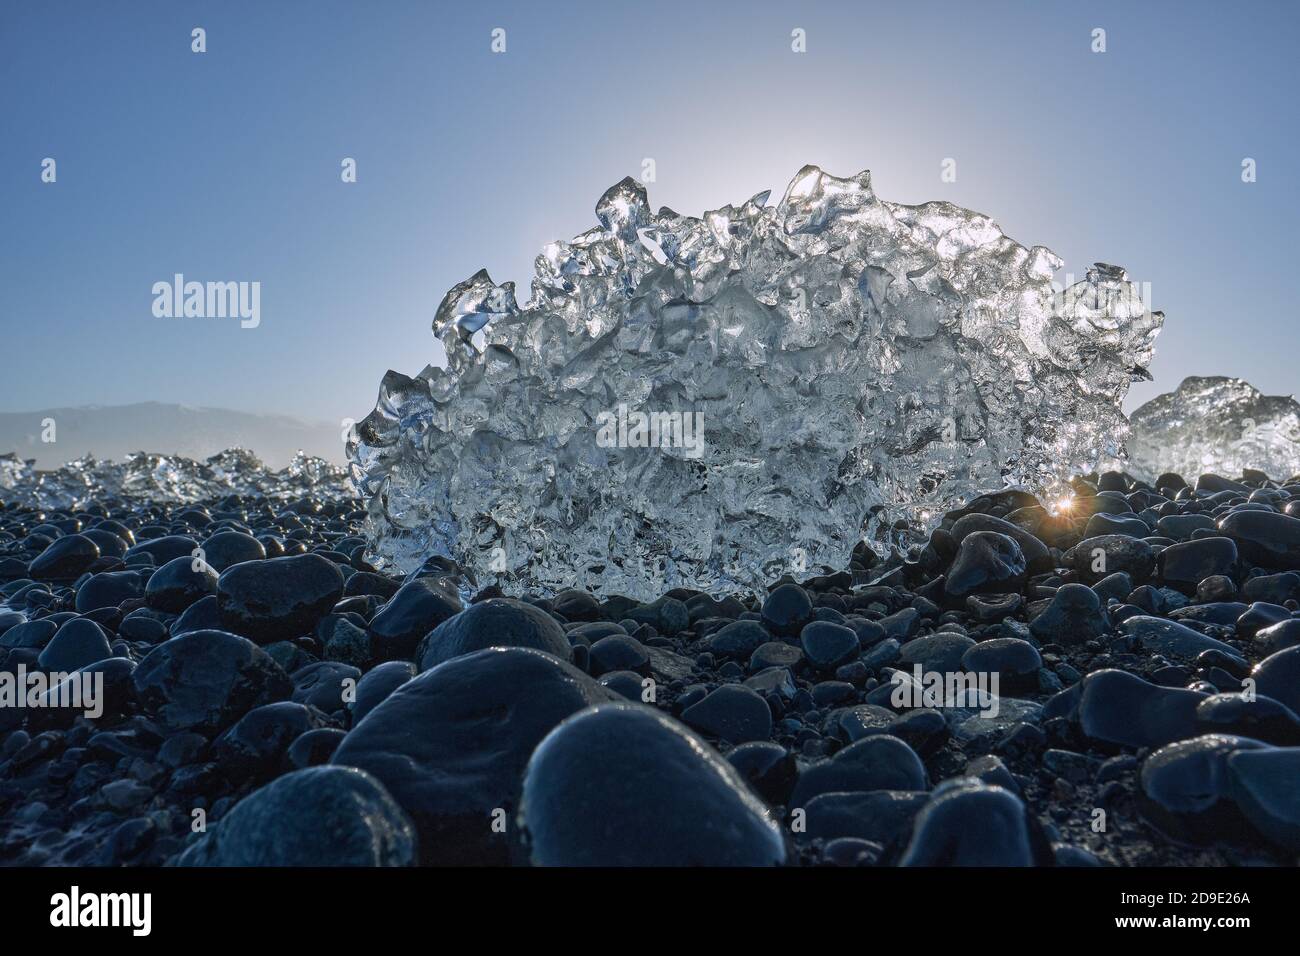 Fusion des fragments glaciaires de l'iceberg sur la plage de galets de basalte noir De Jokulsarlon Islande - glace de fonte du soleil - réchauffement de la planète - changement climatique Banque D'Images